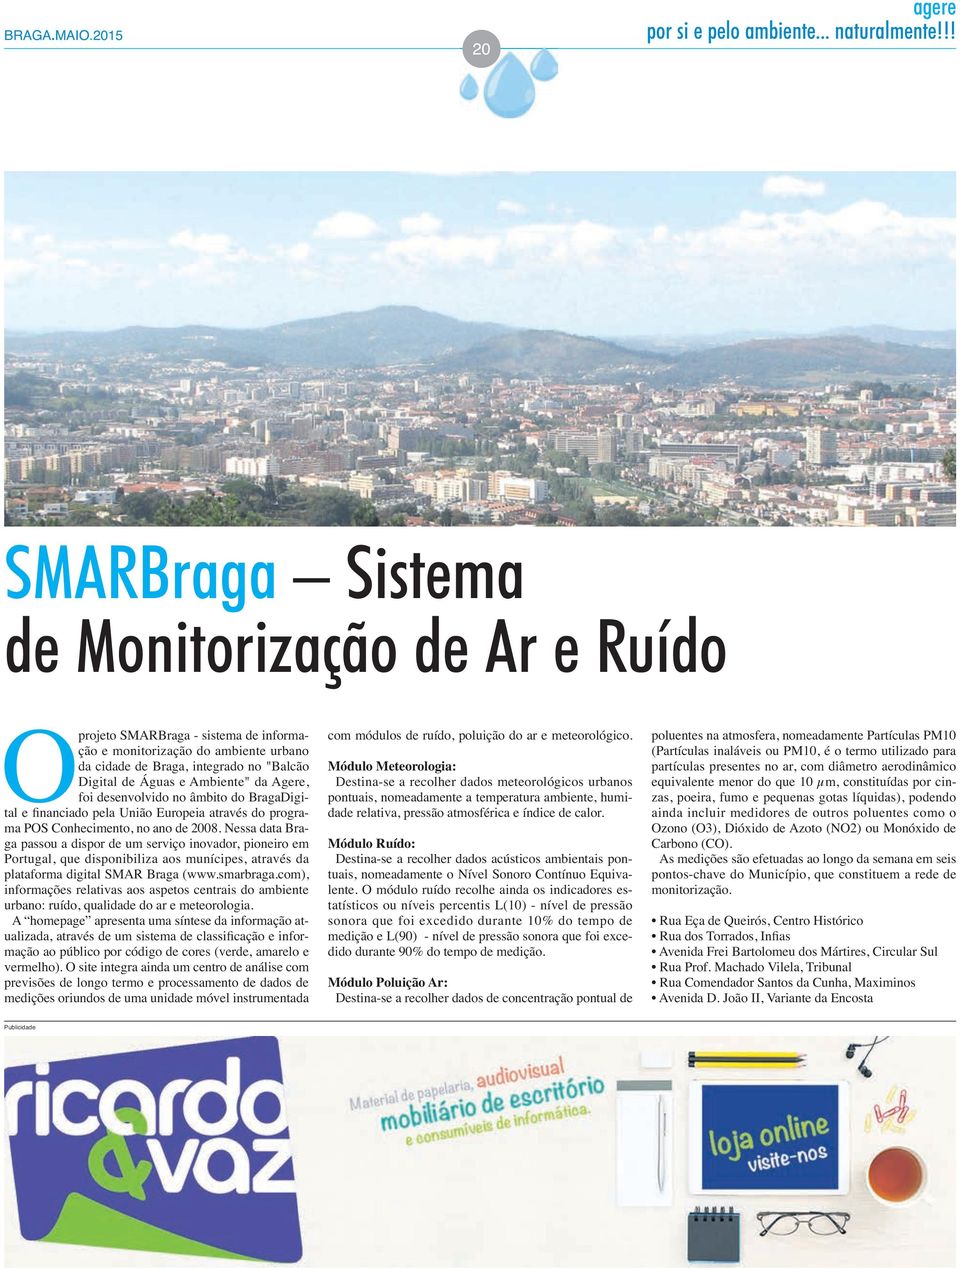 Nessa data Braga passou a dispor de um serviço inovador, pioneiro em Portugal, que disponibiliza aos munícipes, através da plataforma digital SMAR Braga (www.smarbraga.